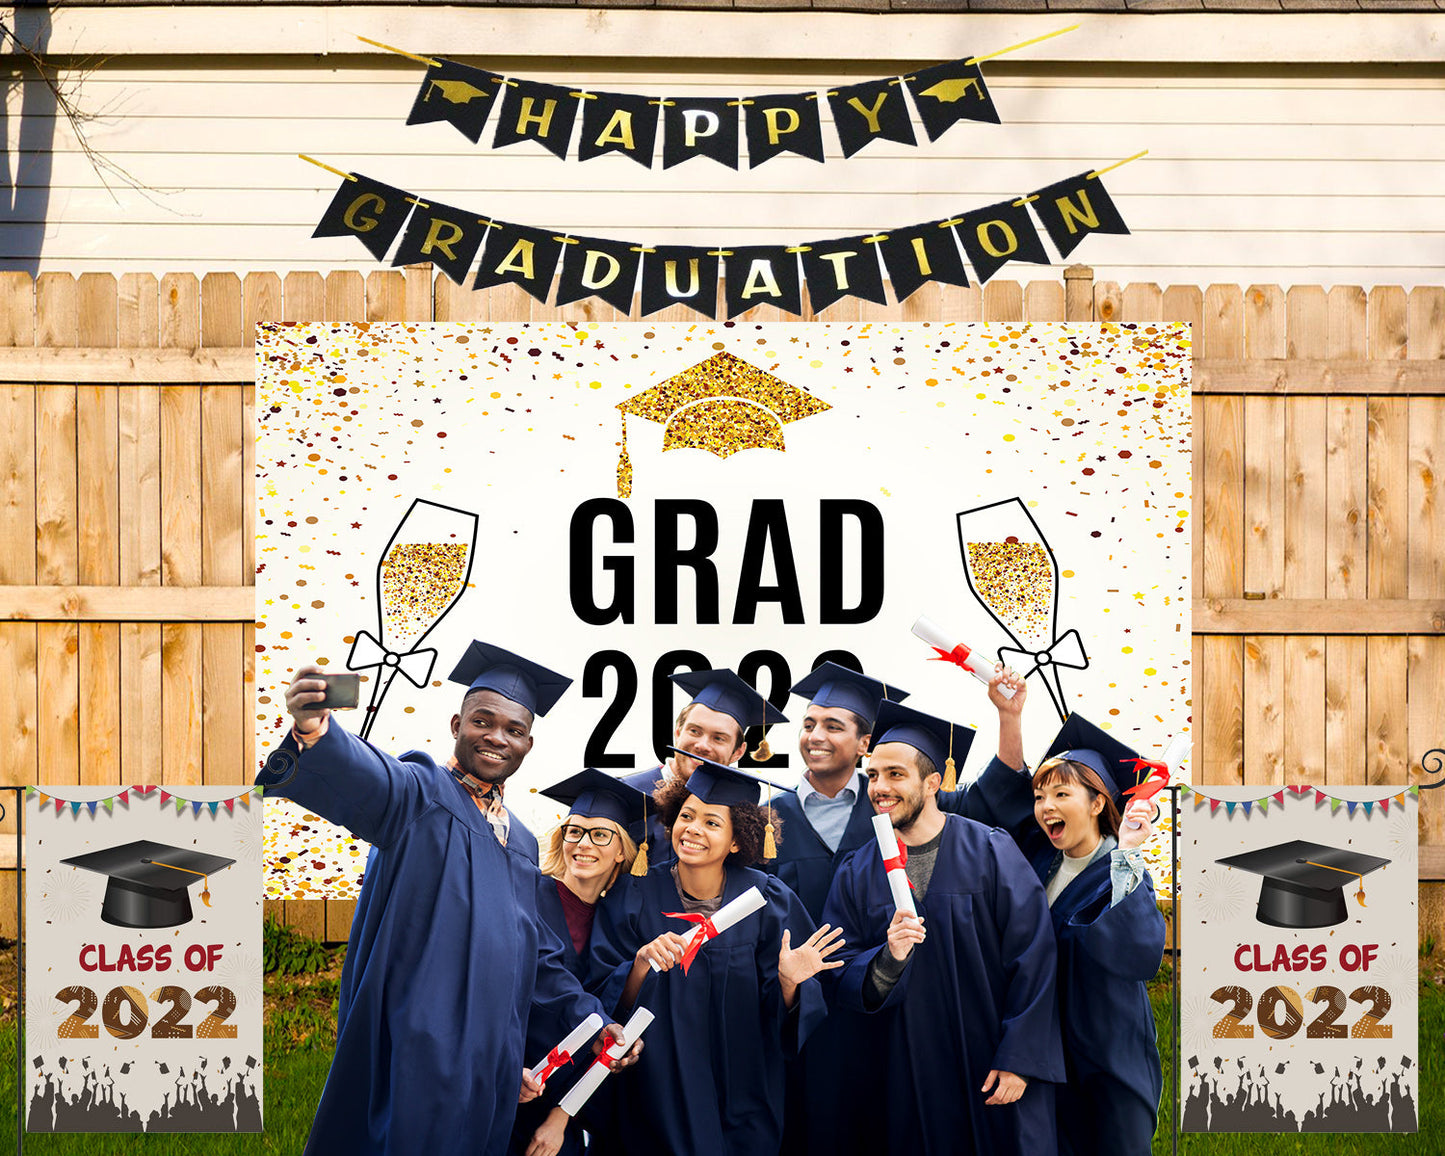 Toile de fond de fête de remise des diplômes champagne 2022 pour les décorations photographie TKH1862